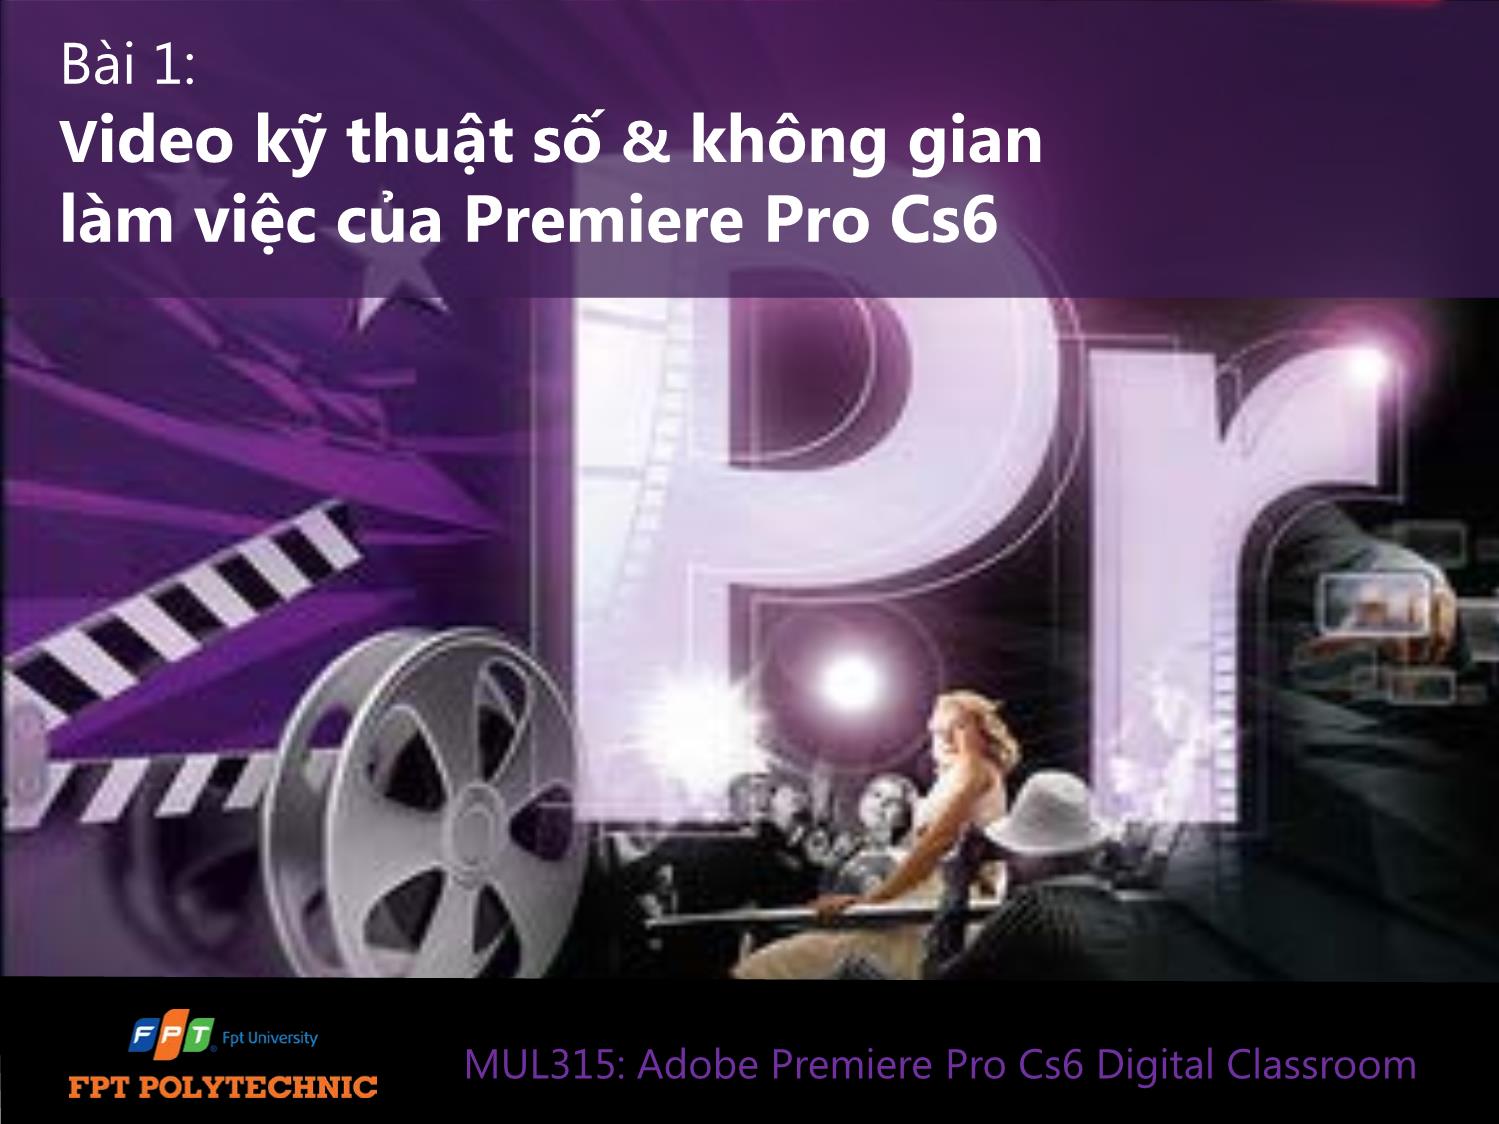 Bài giảng Xử lý hậu kỳ với Adobe Premiere Pro Cs6 - Bài 1: Video kỹ thuật số & không gian làm việc của Premiere Pro Cs6 trang 1